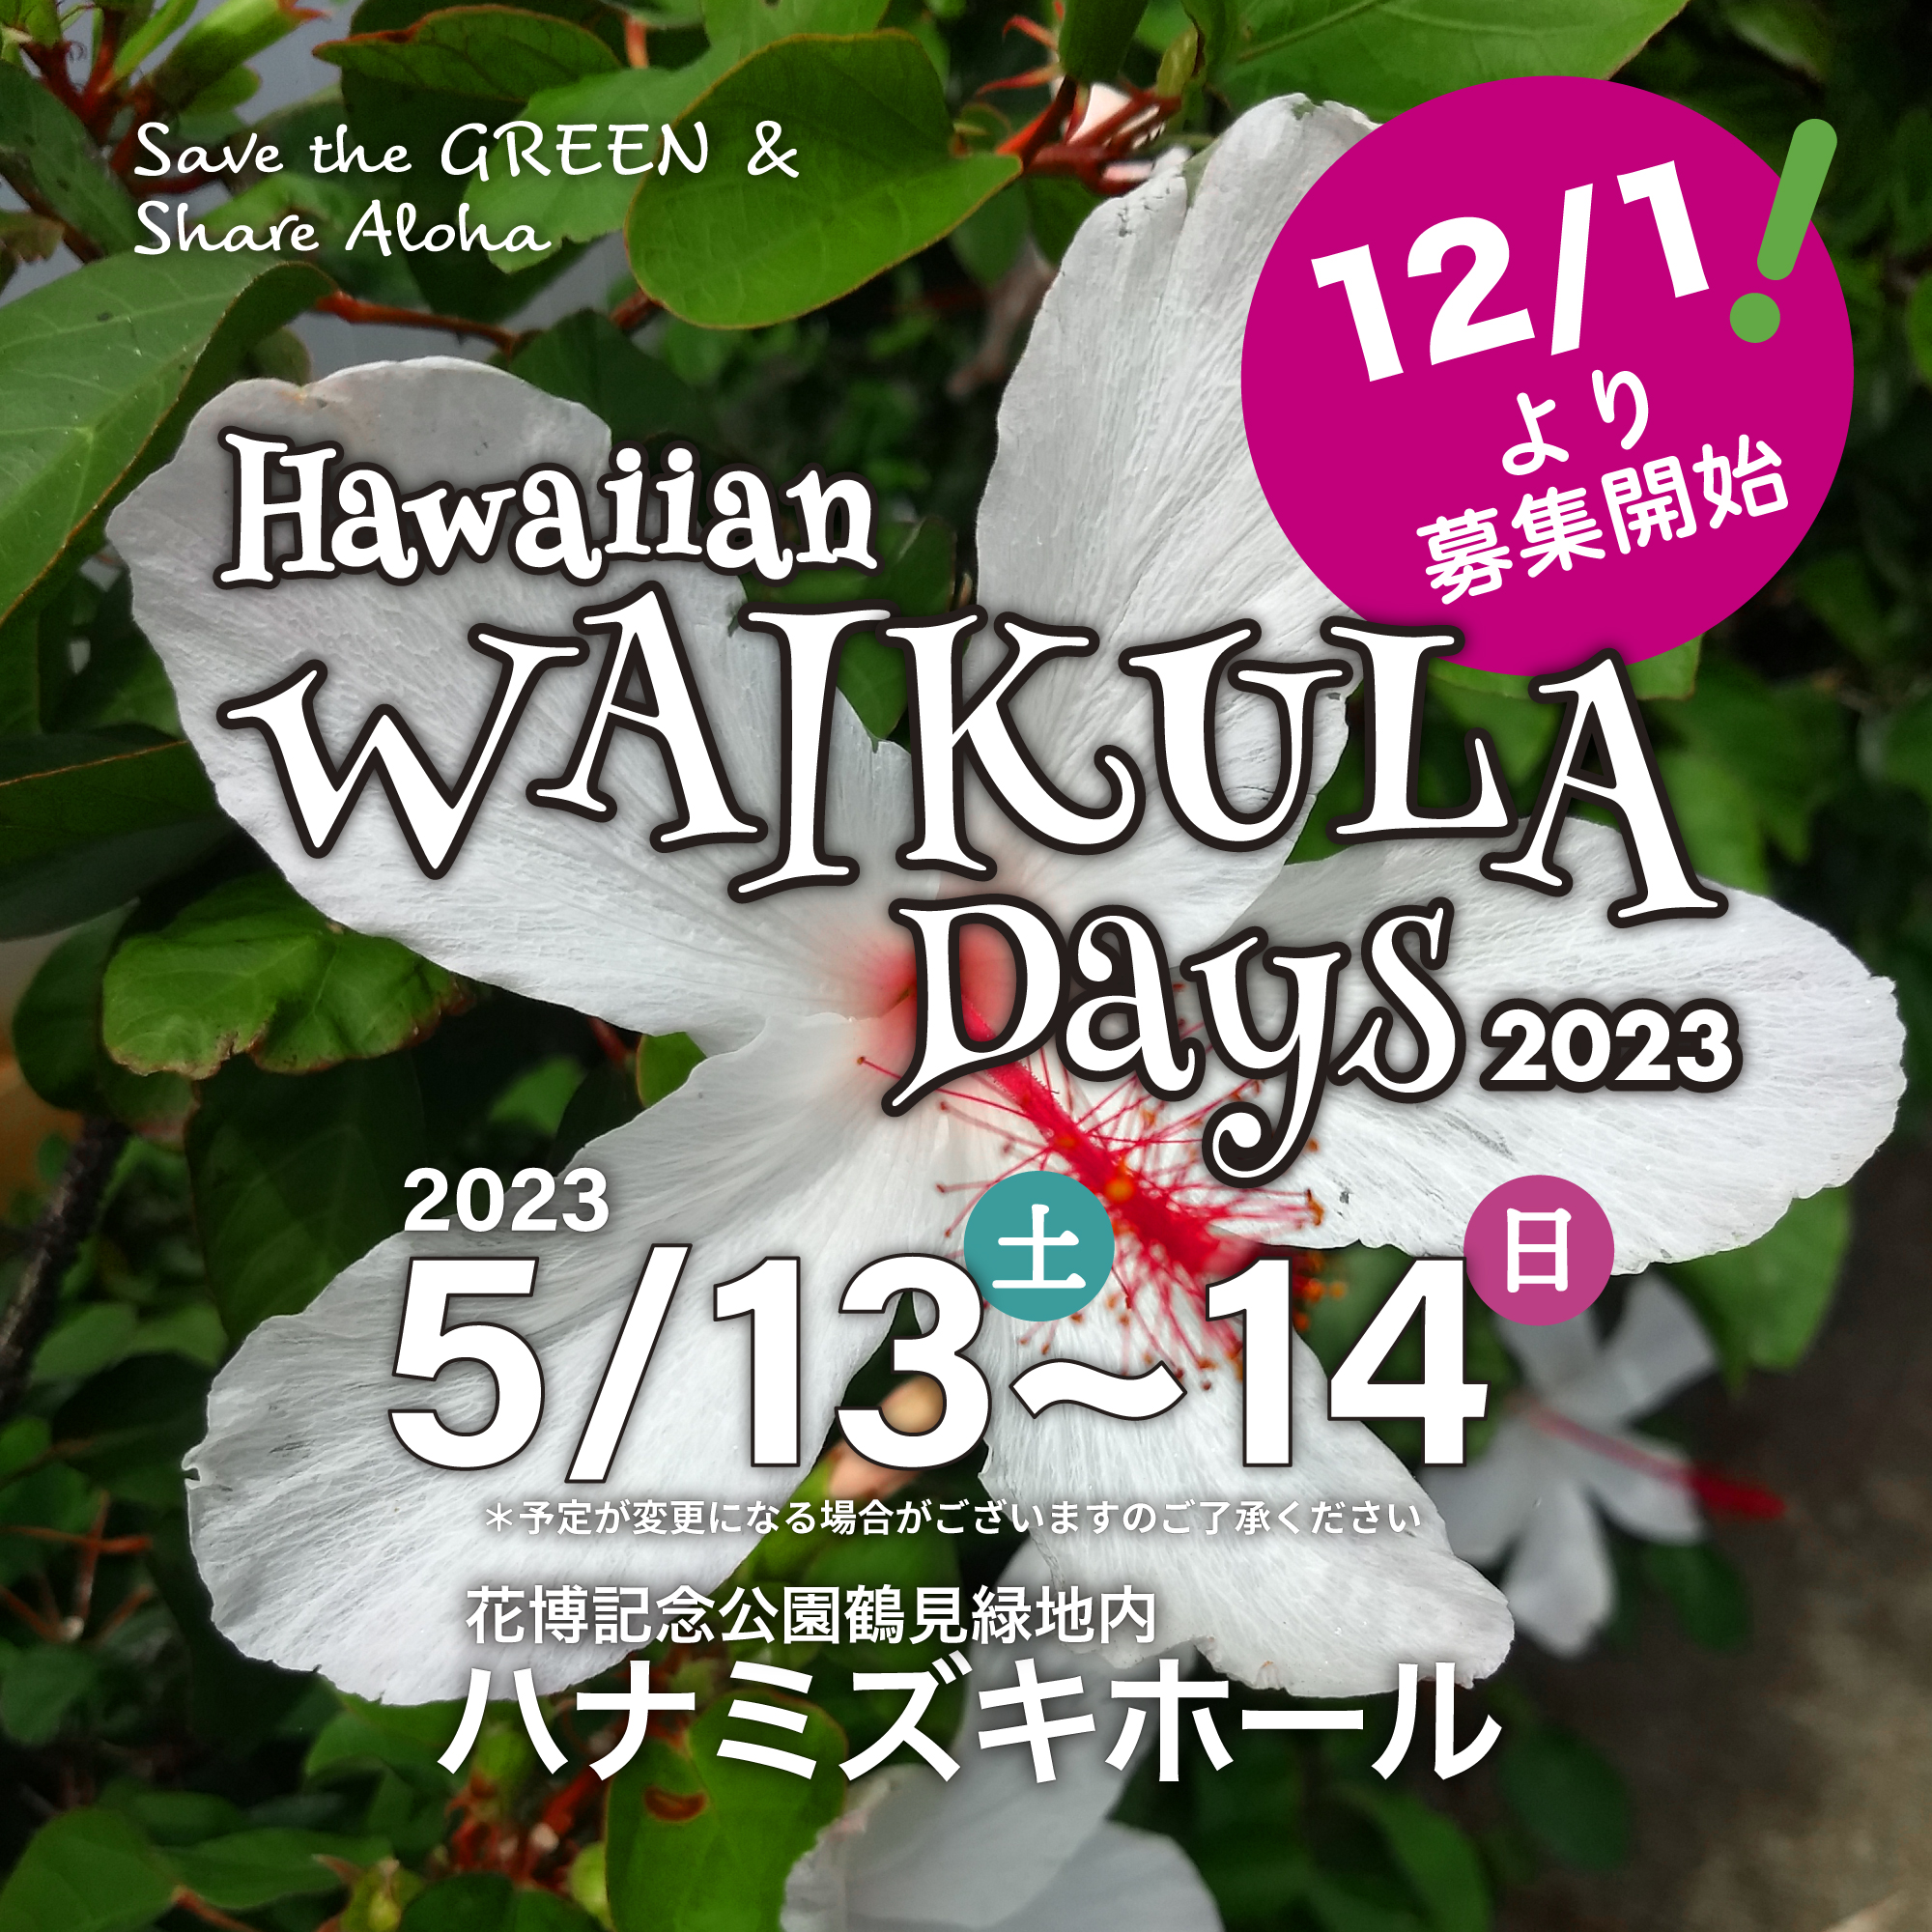 Hawaiian WAI KULA Days 2023参加者の募集を開始致します！